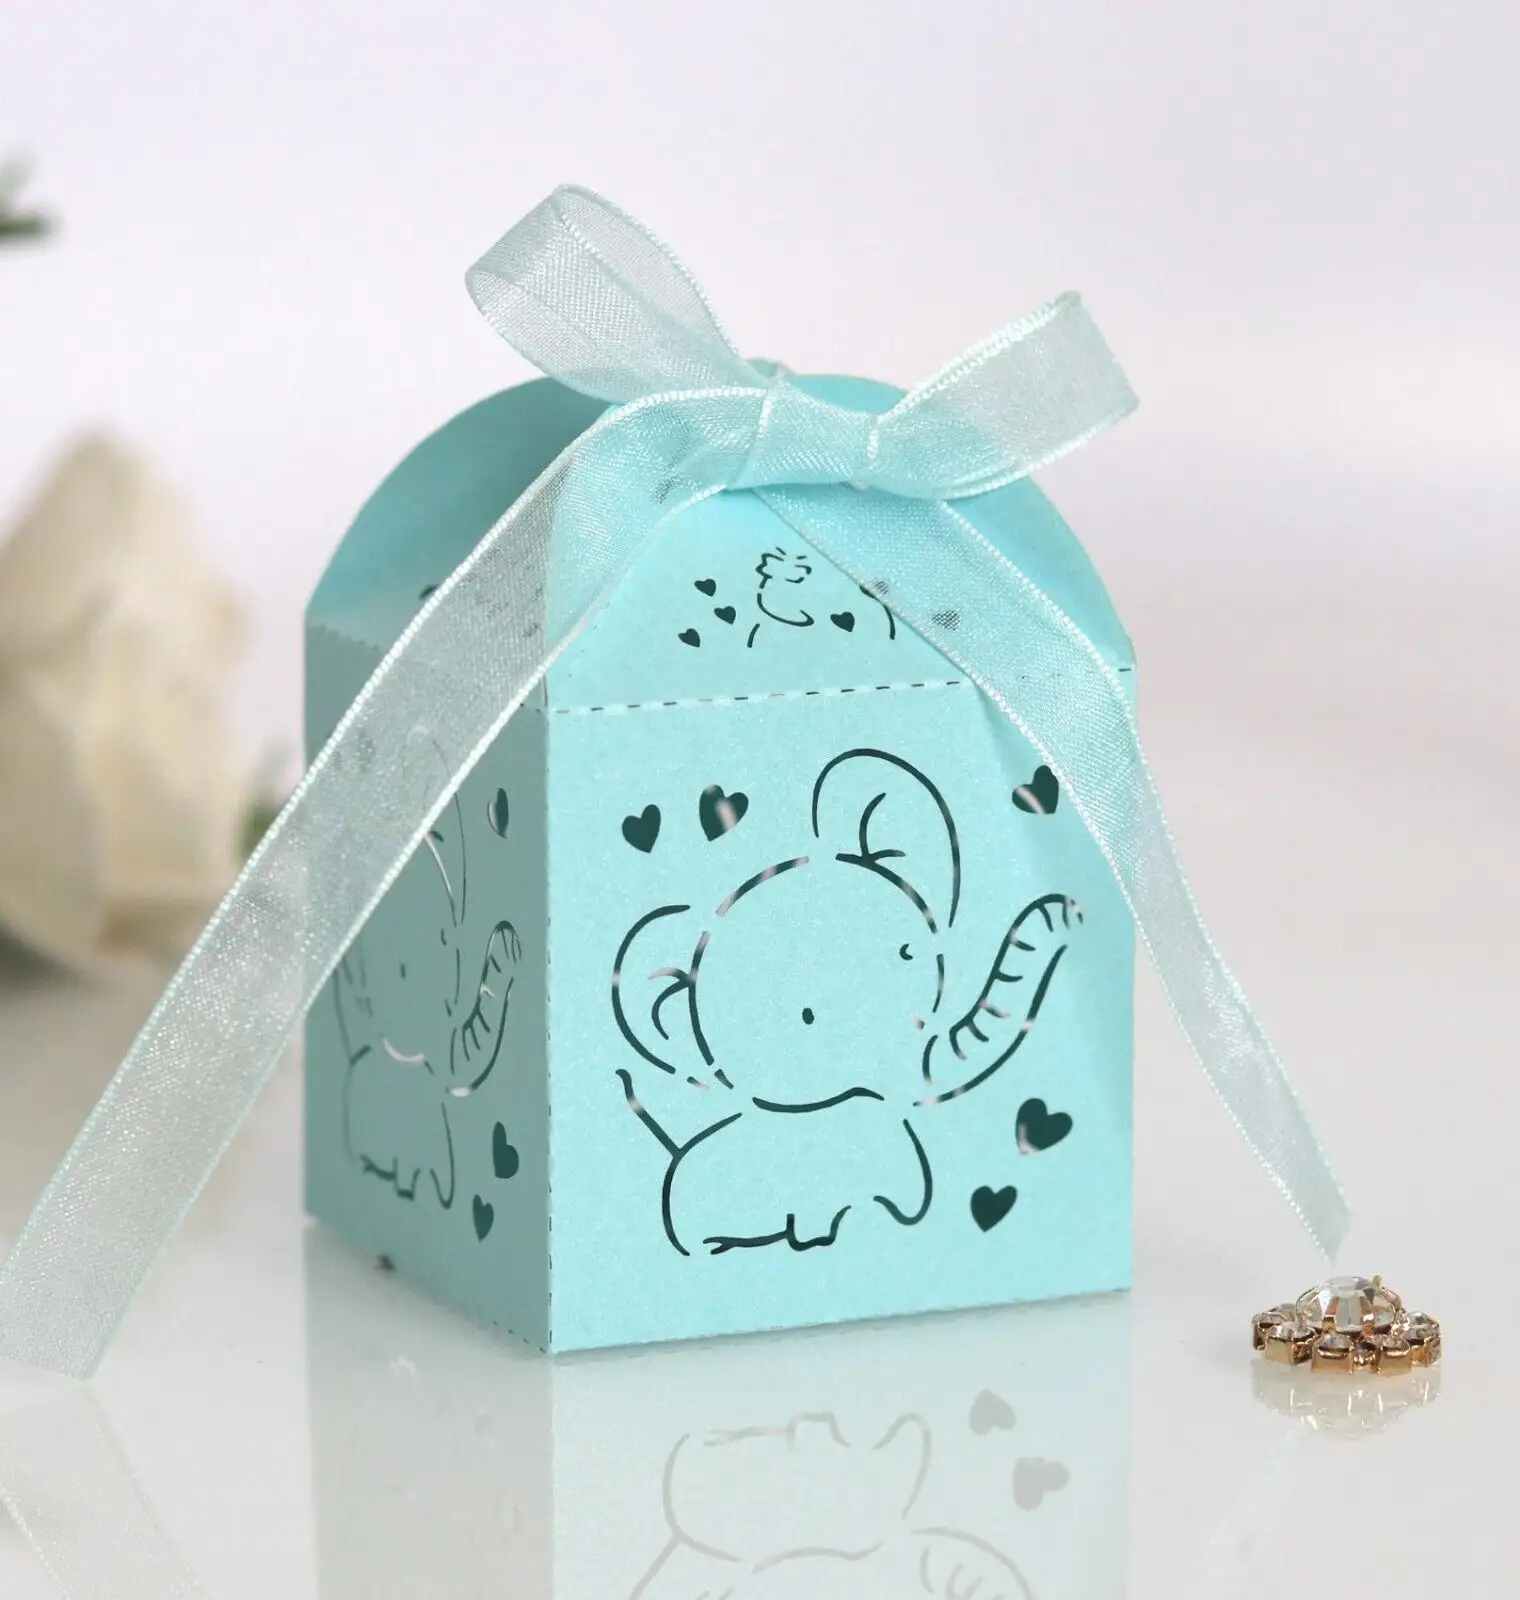 TRIHO TRb- 1058 Candy Box bomboniere per feste di compleanno Baby Shower regali scatole forniture per imballaggio